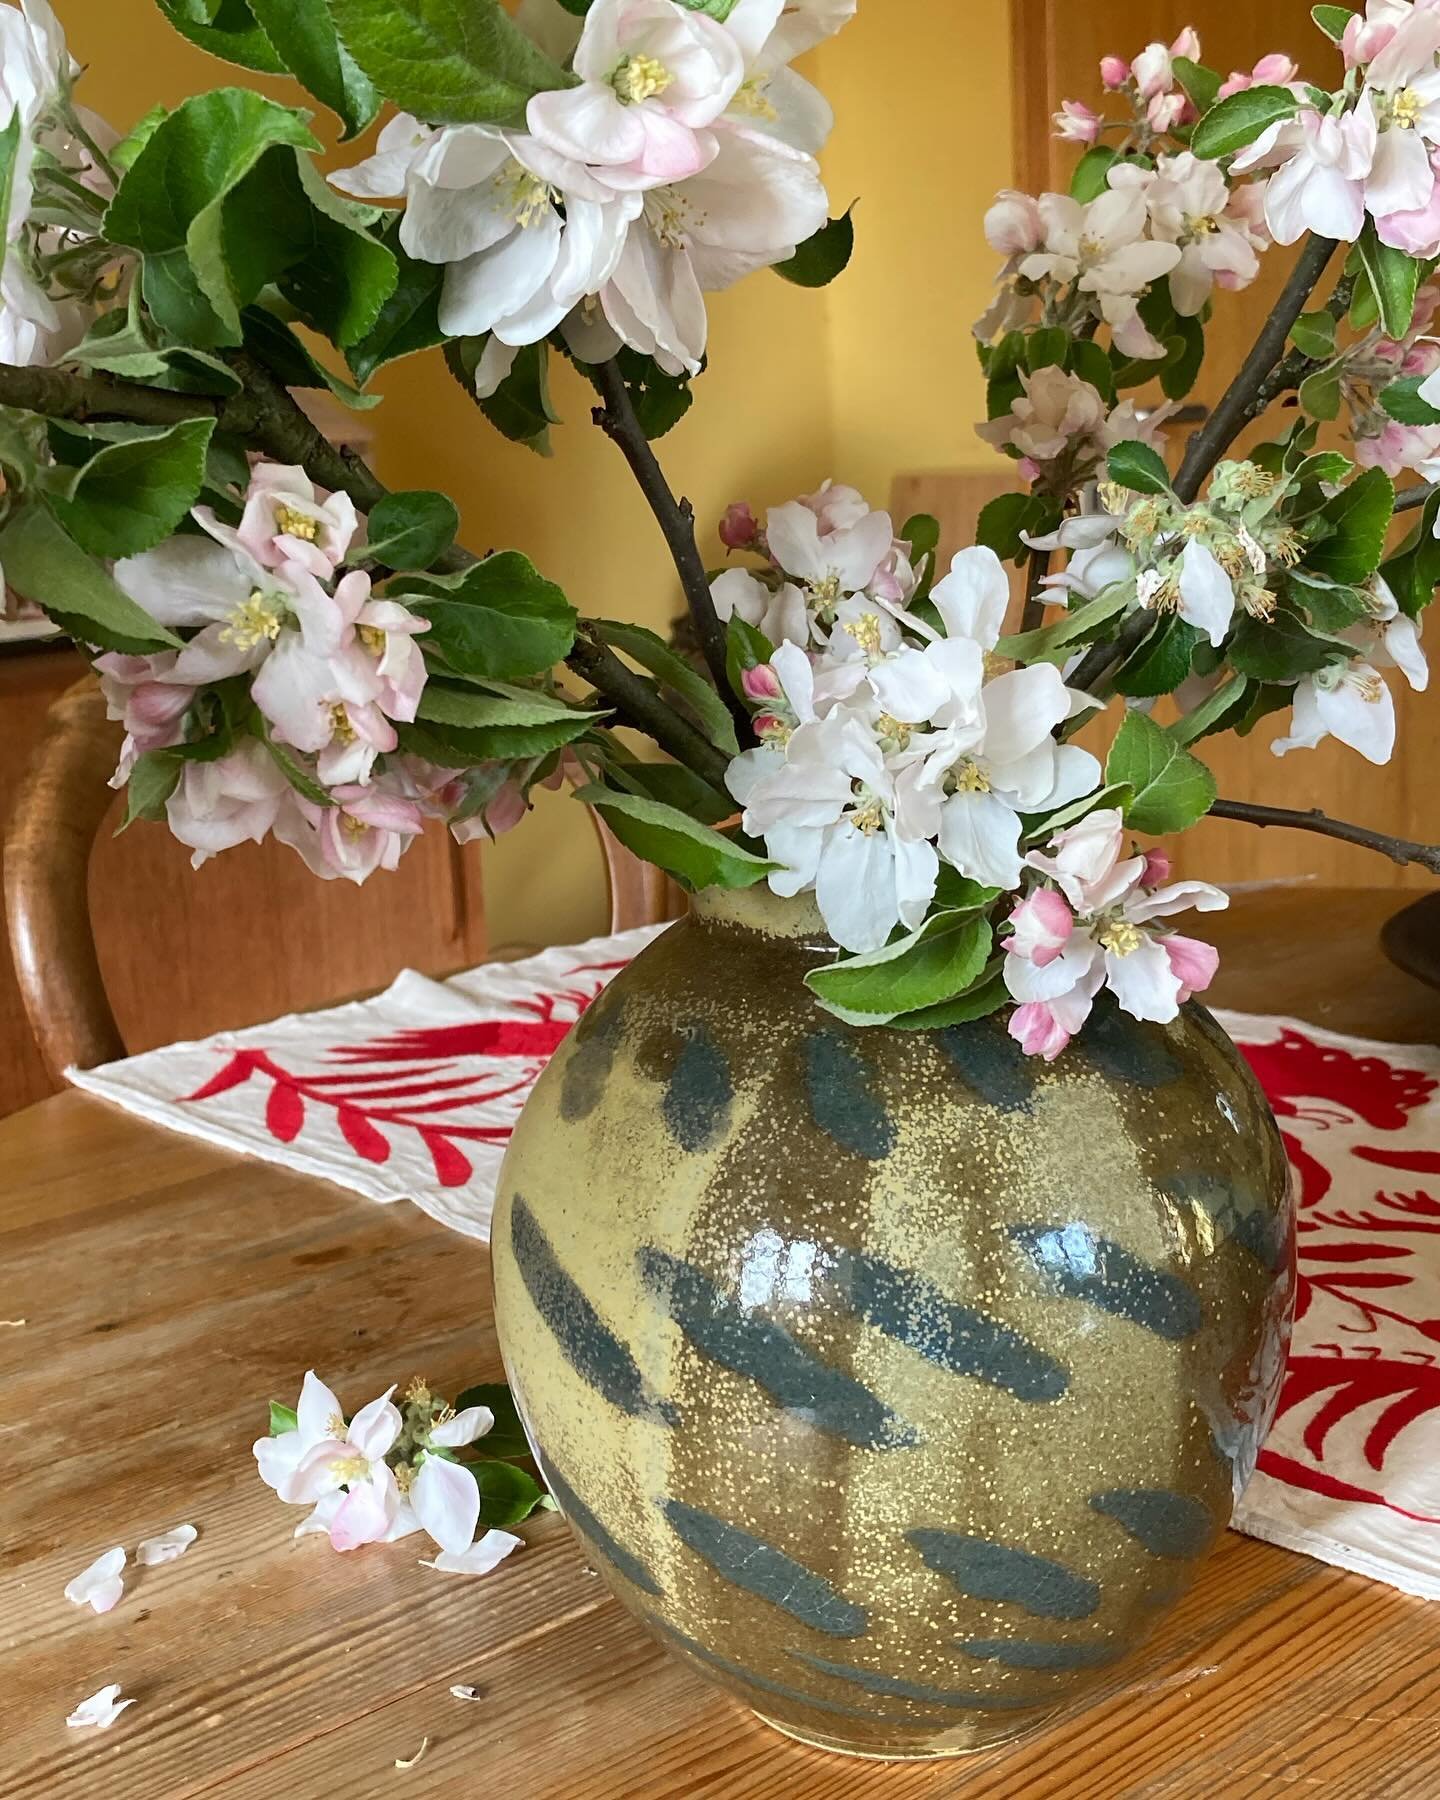 Apfelbl&uuml;te, eigentlich viel zu fr&uuml;h. Die Vase entstand in unserer Anfangszeit, ist ziemlich lange her🙂
#apfelbl&uuml;te #vasenliebe🌸 #steinzeugkeramik #handmade #wheelthrown #kunsthandwerker #keramikpatlan